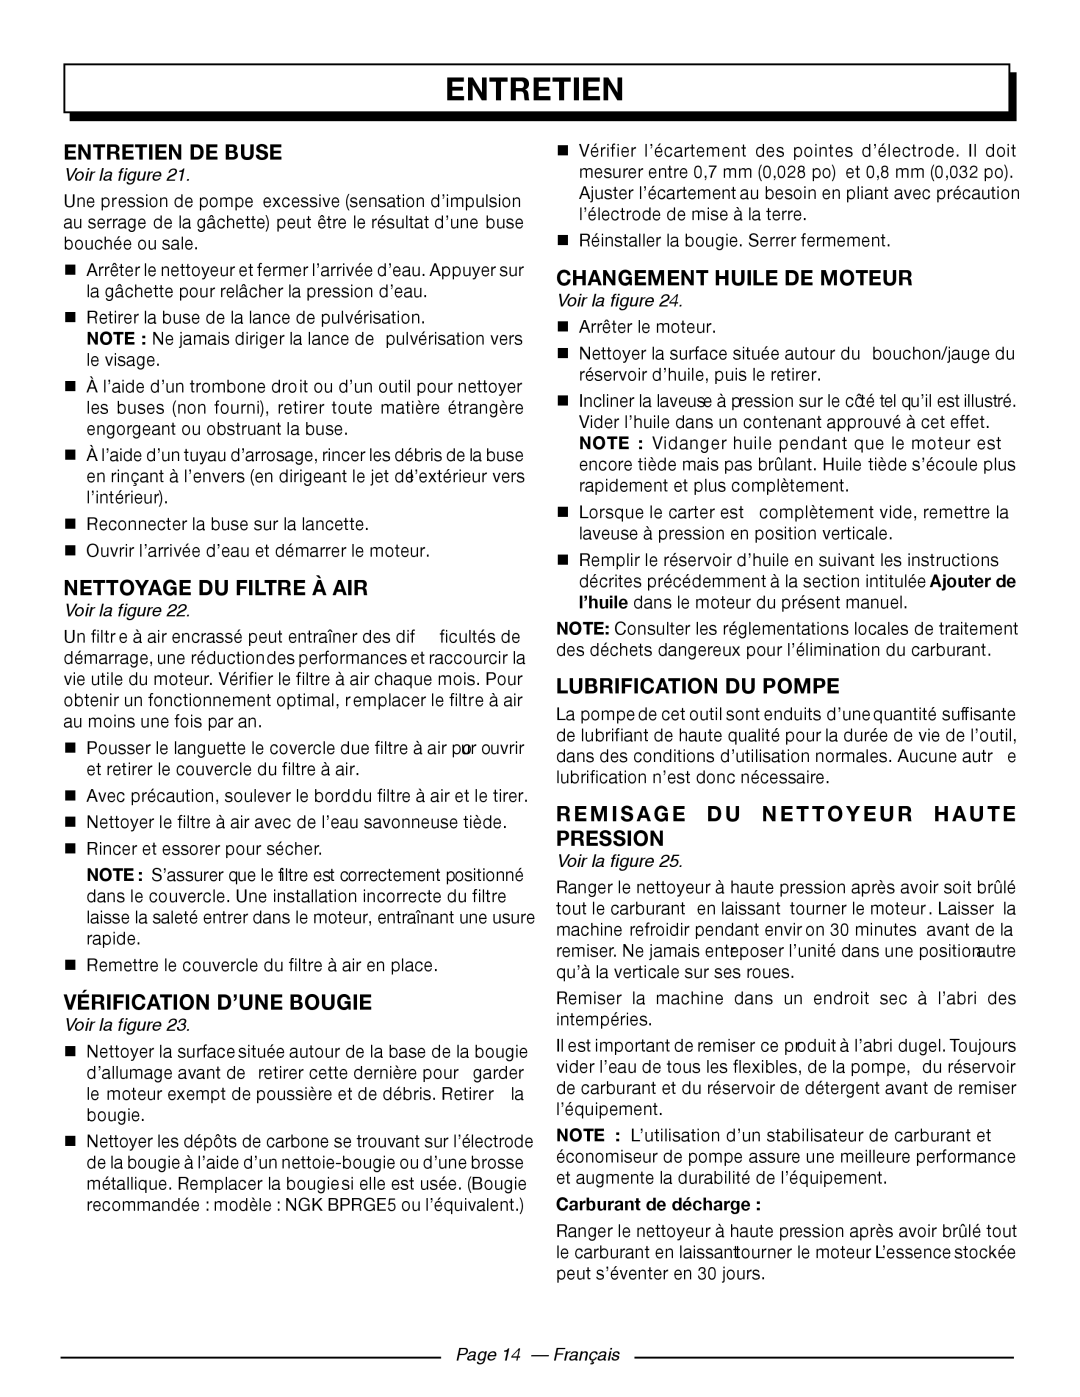 Homelite UT80709 Entretien De Buse, Nettoyage Du Filtre À Air, Vérification D’Une Bougie, Changement Huile De Moteur 